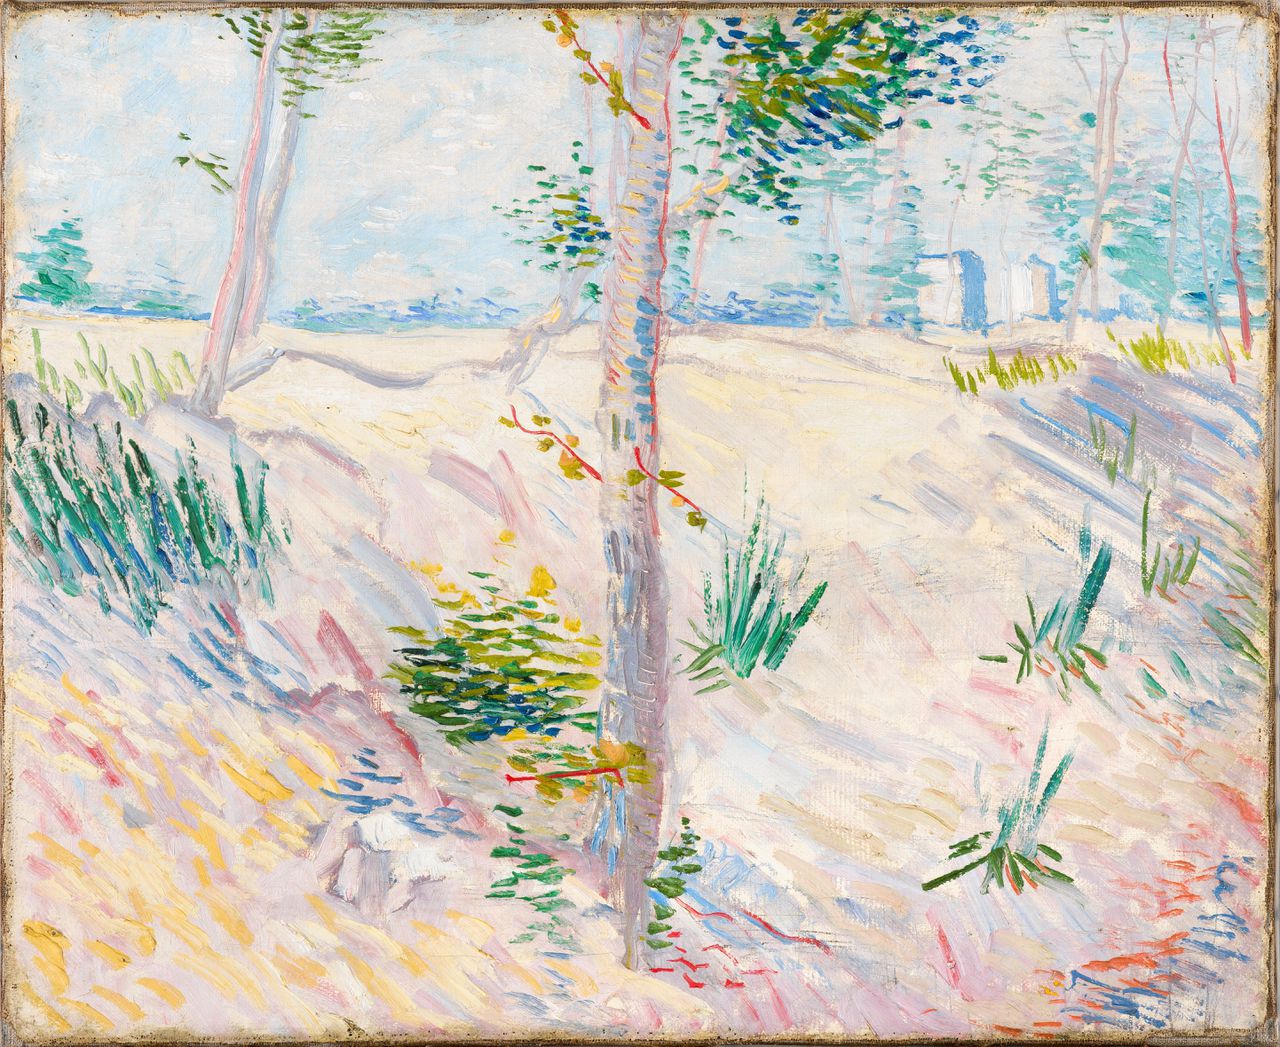 Vincent van Gogh, Oever met bomen, 1887.